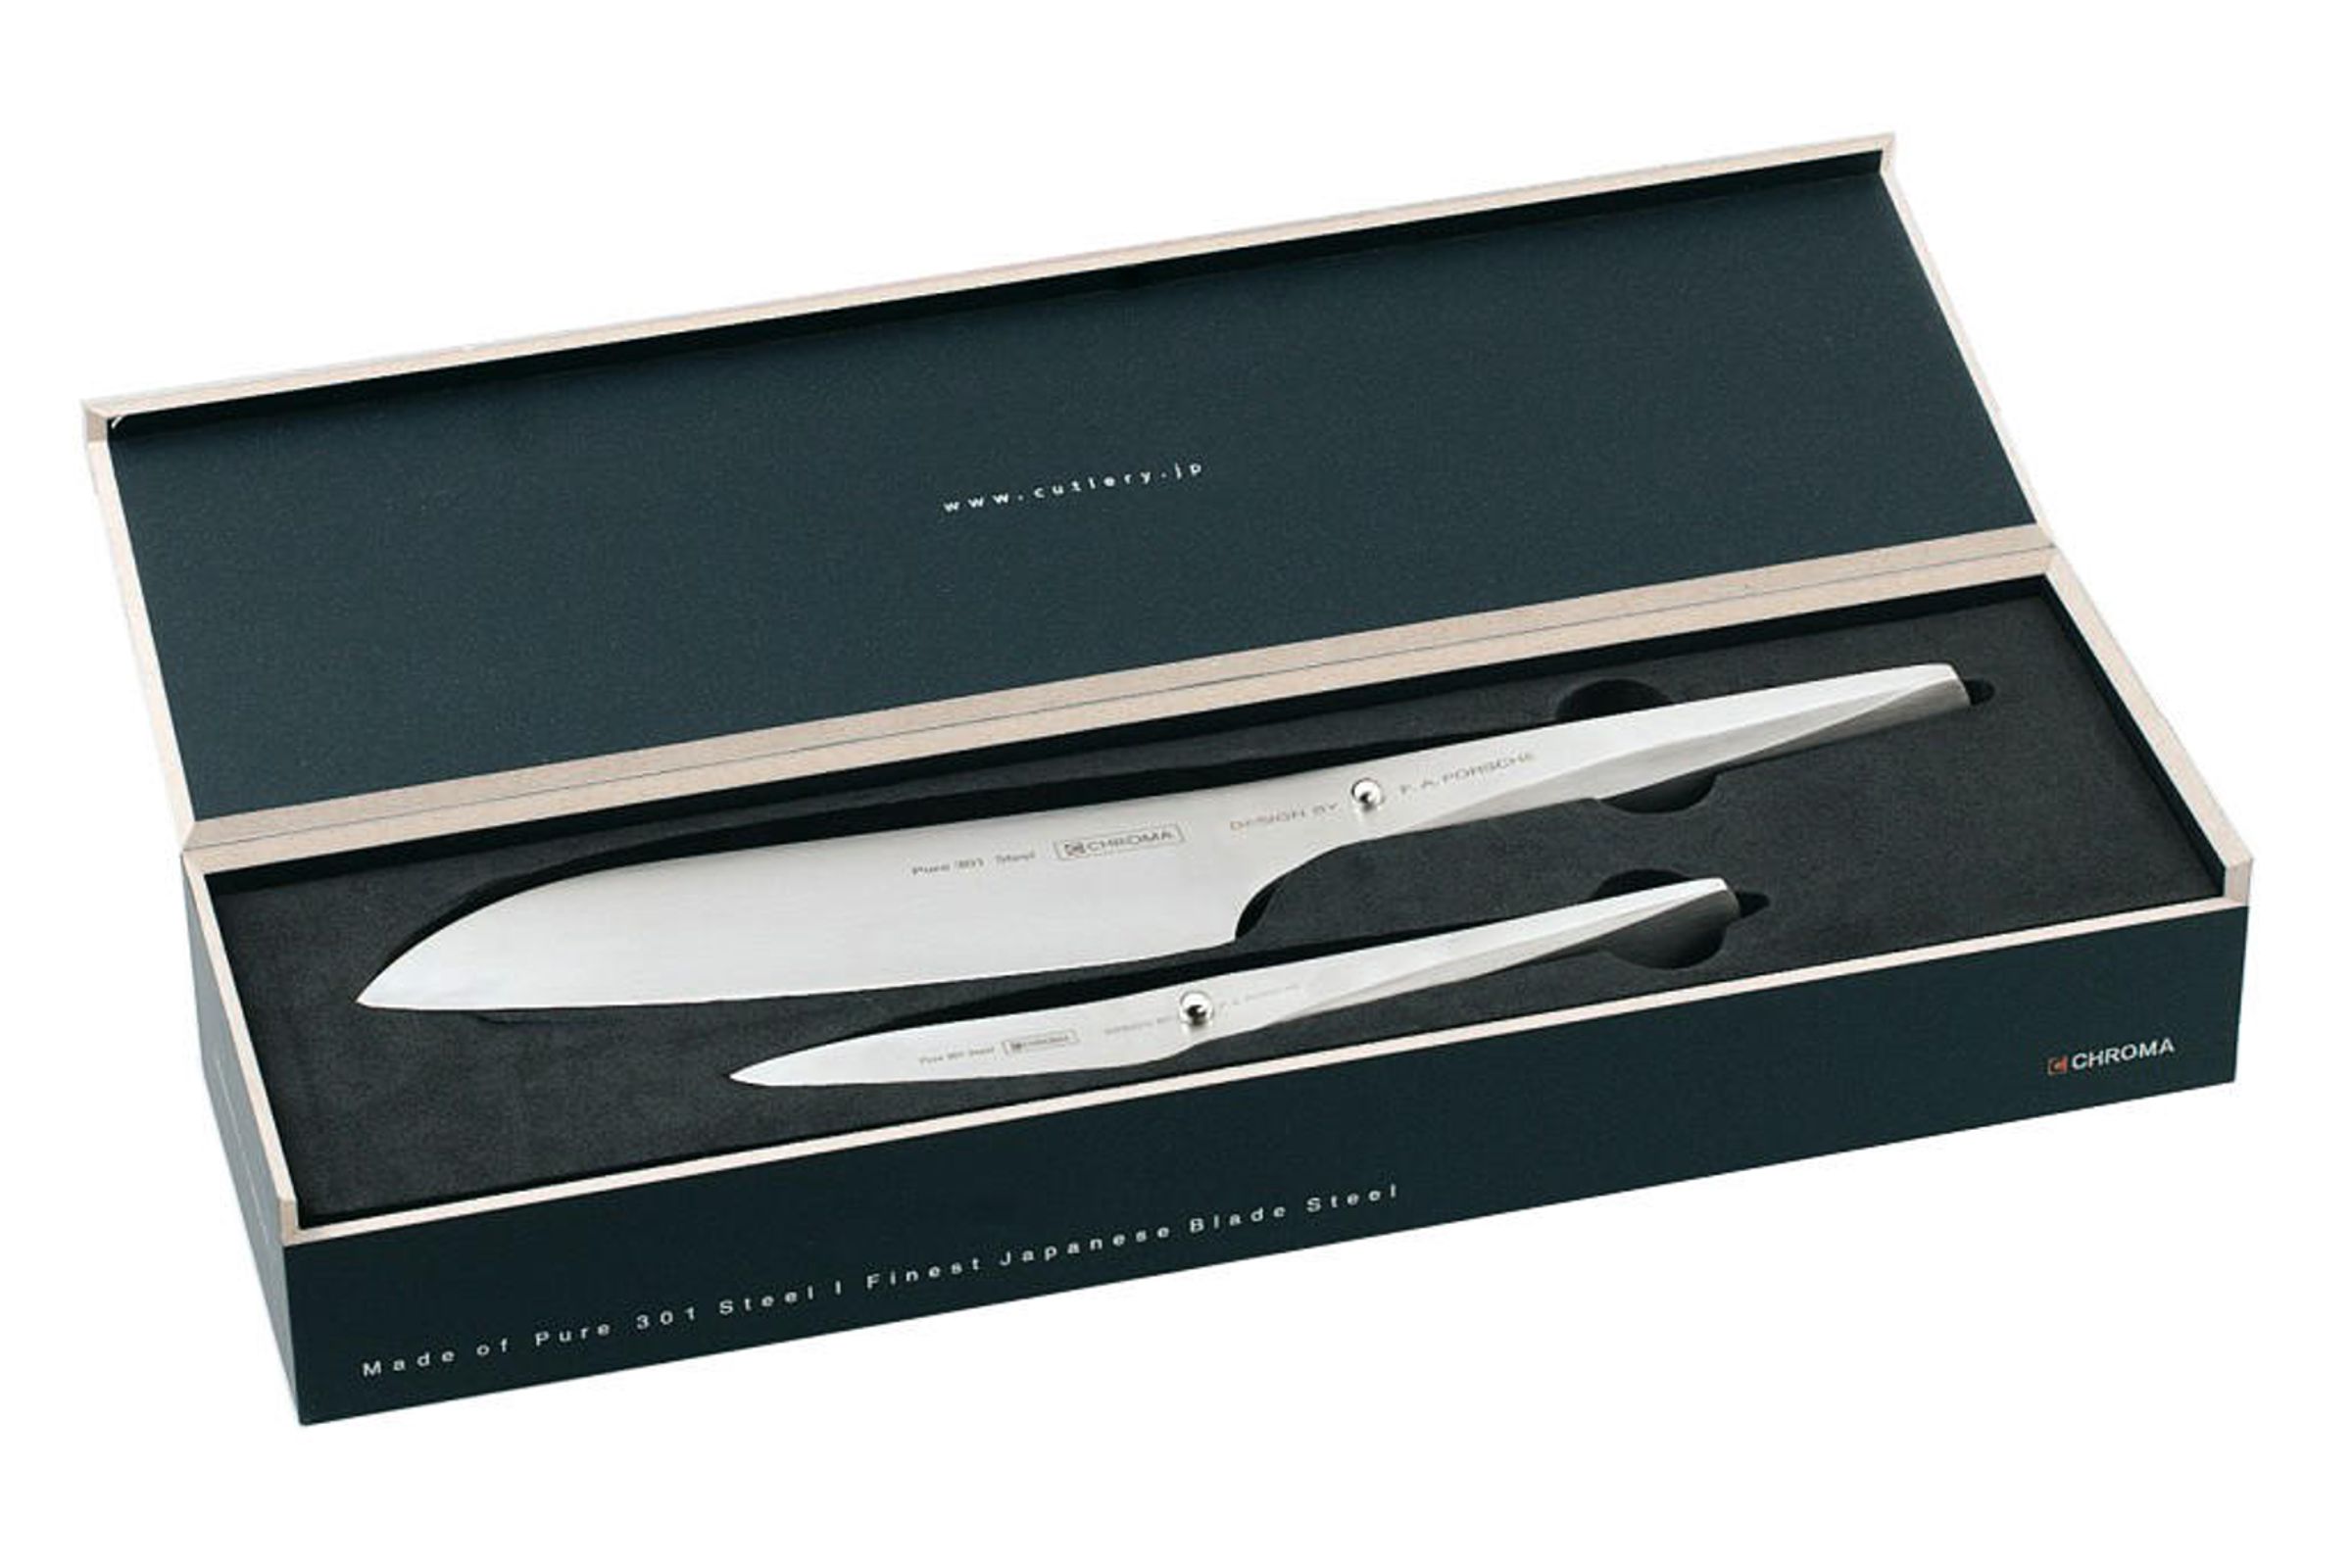 CHROMA Type 301 Messer-Set - Santoku und Schälmesser - 2 teilig - Produktansicht mit Verpackung